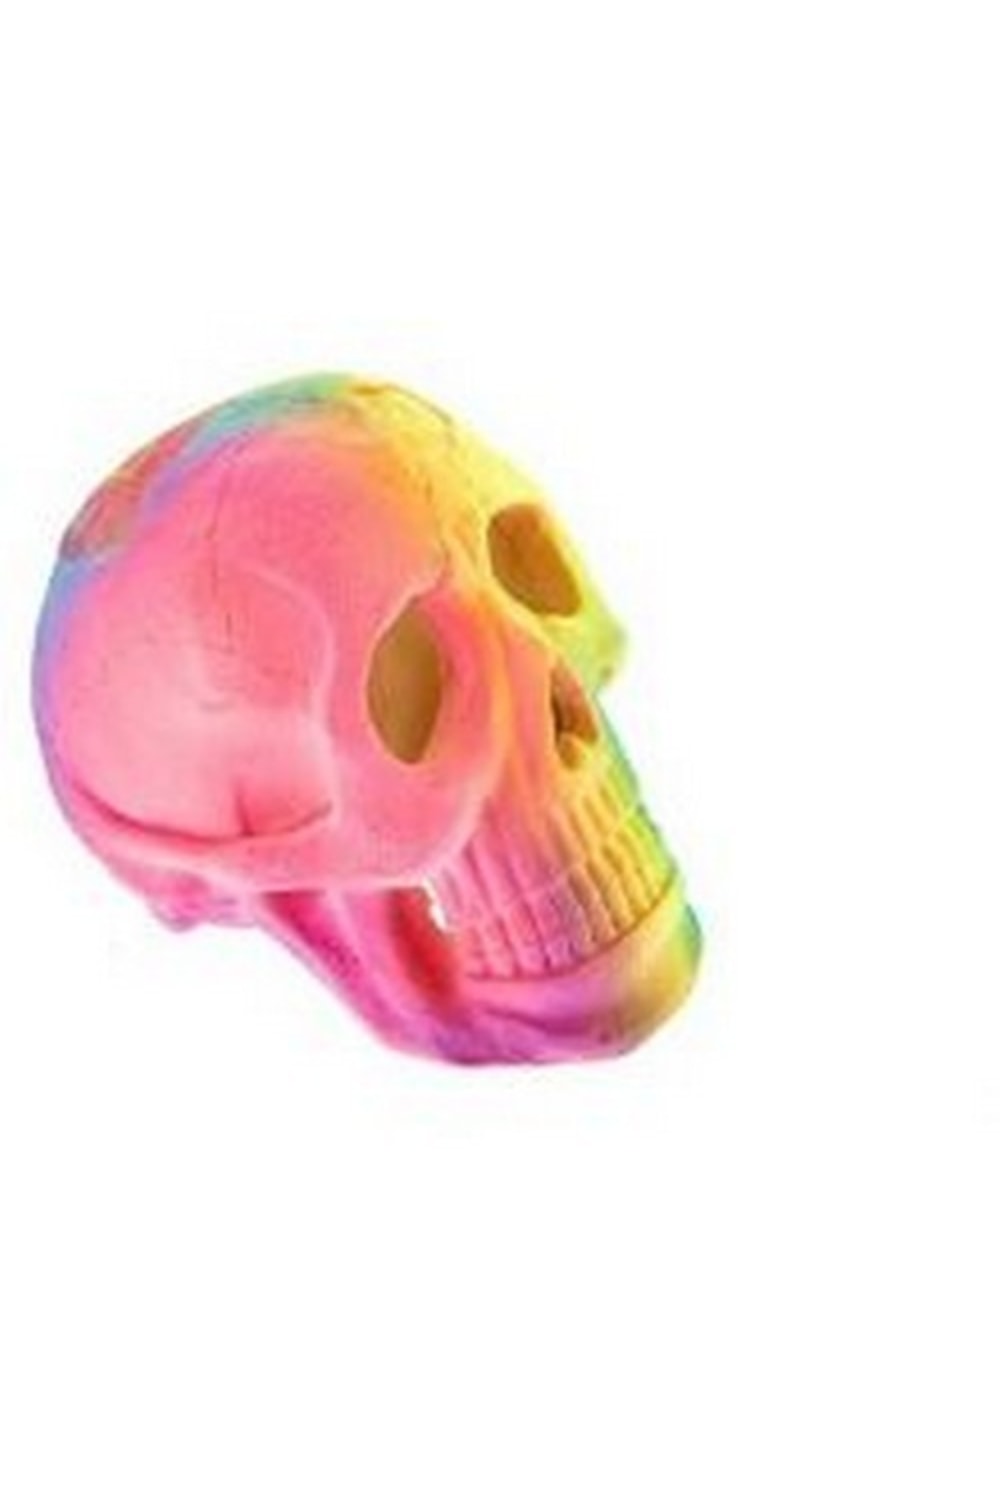 Caldex Classic Aquarium Decoration Fluorescent Skull (May Vary) (One Size)